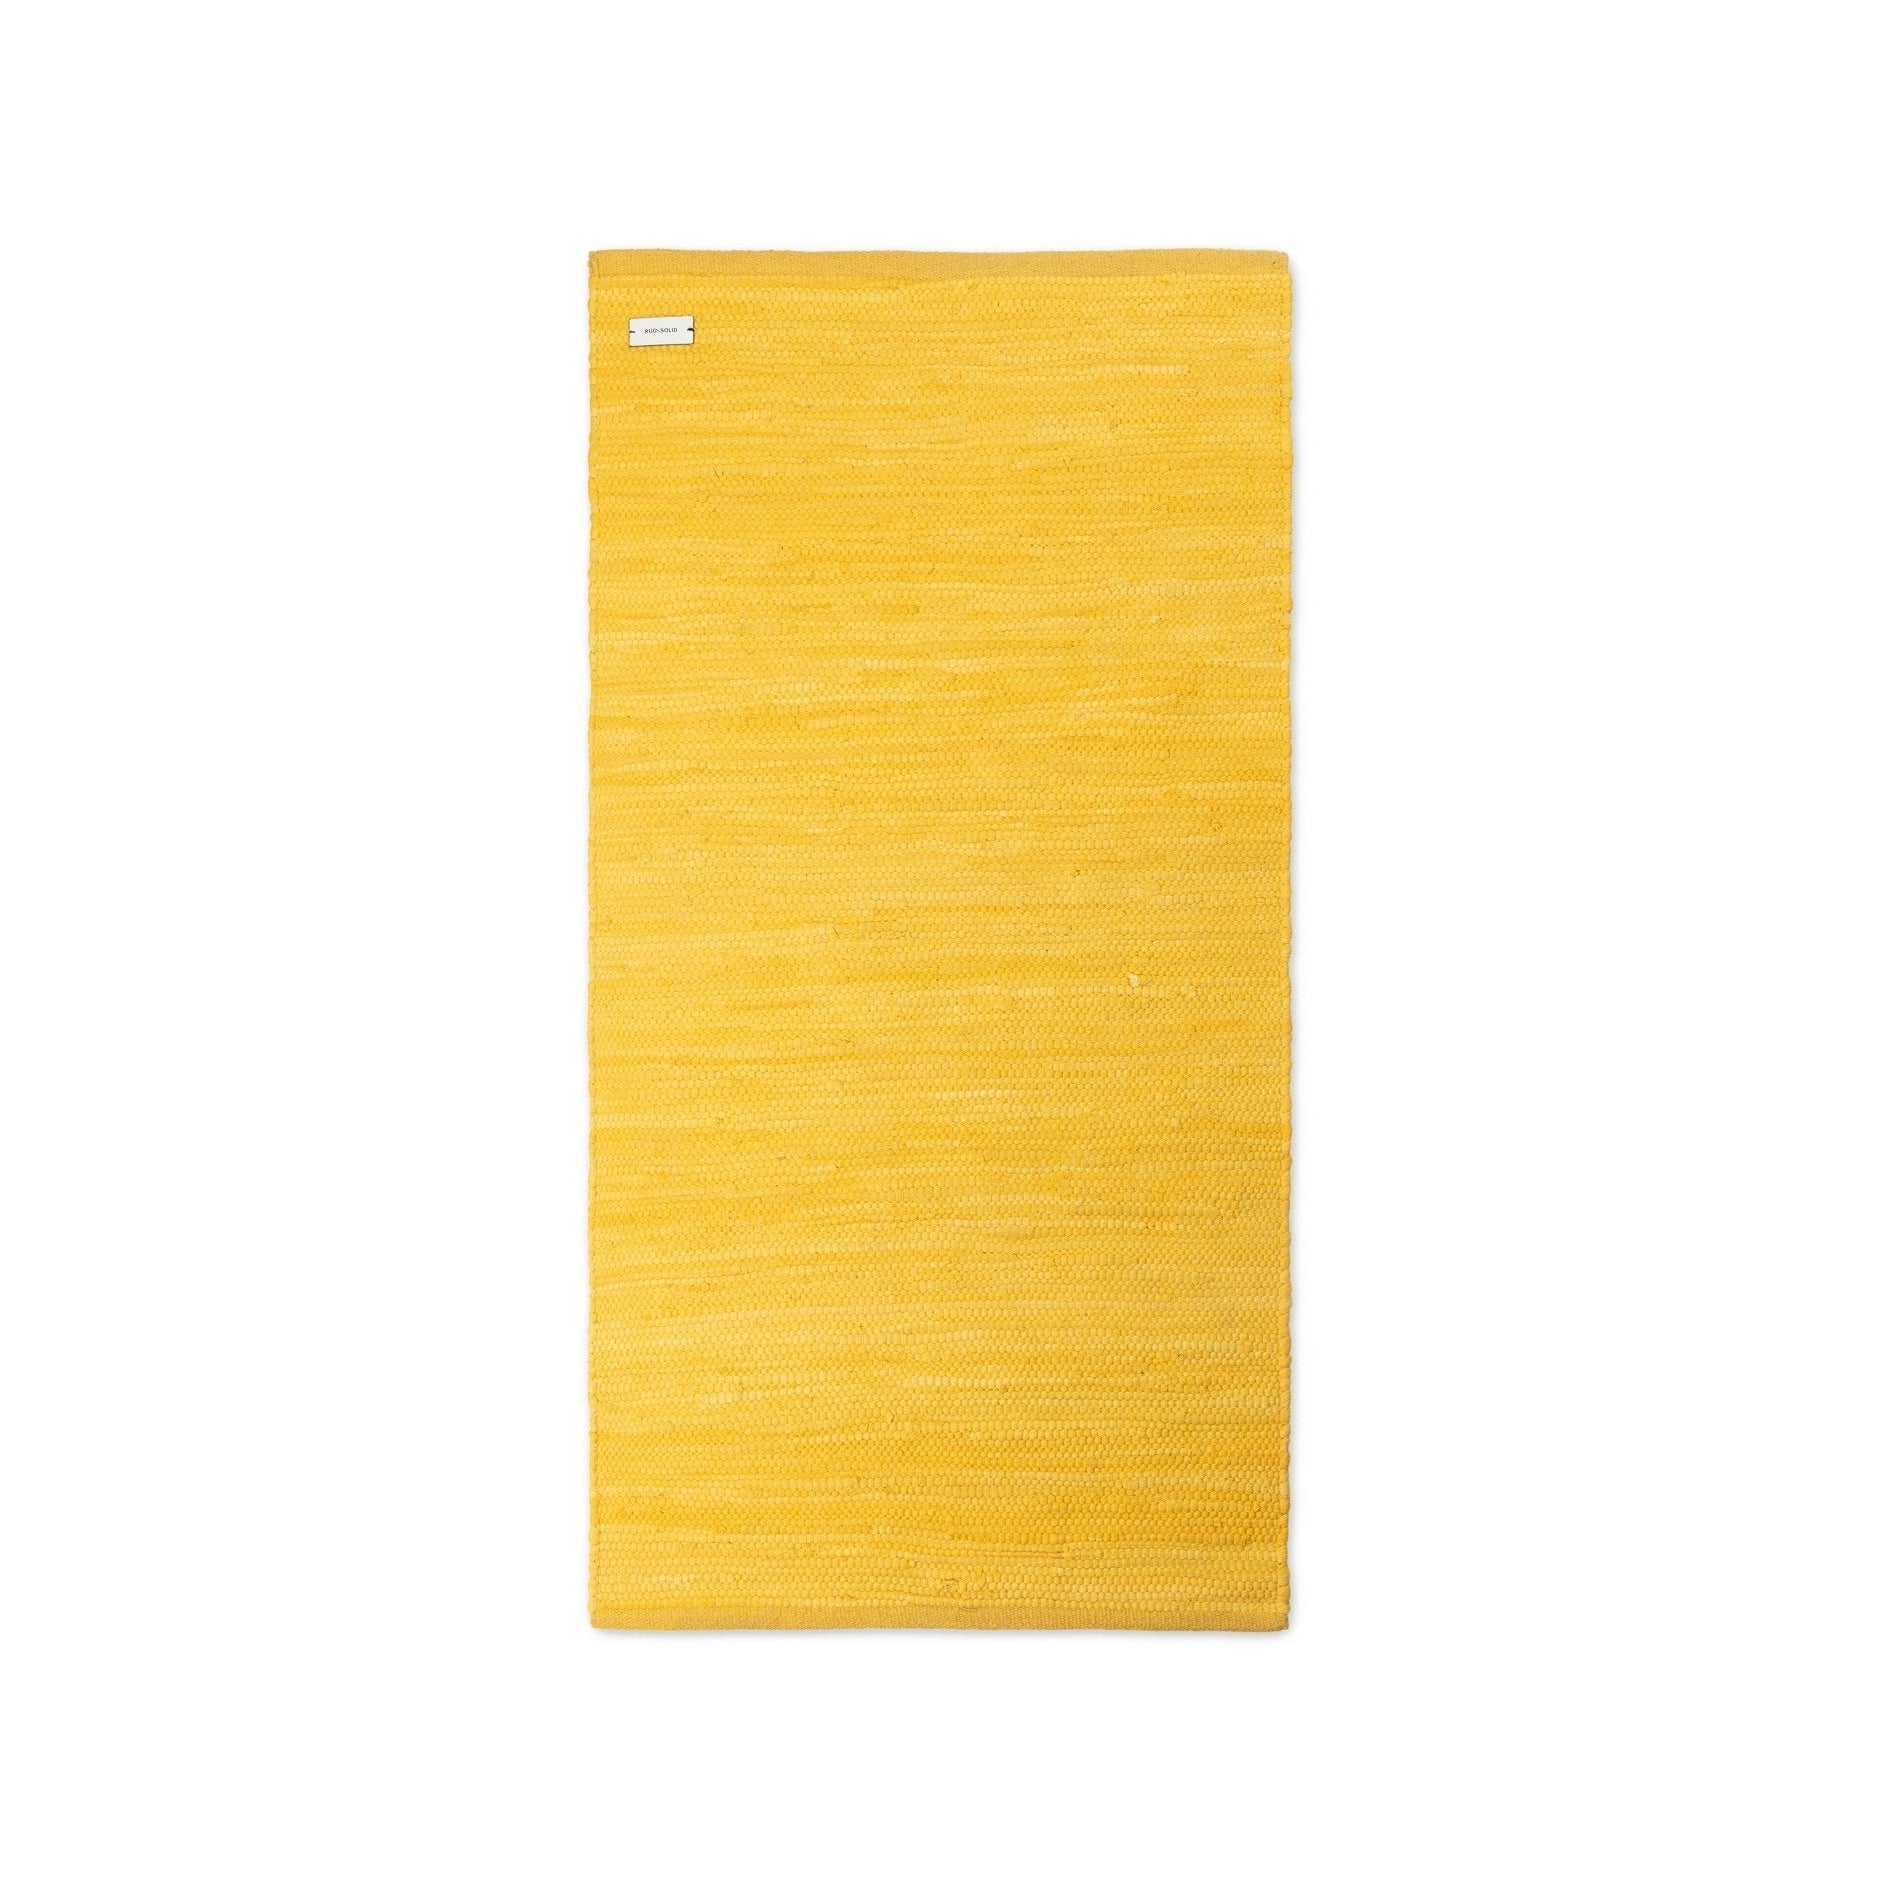 Rug Solid Katoenen tapijt regenjas geel, 60 x 90 cm